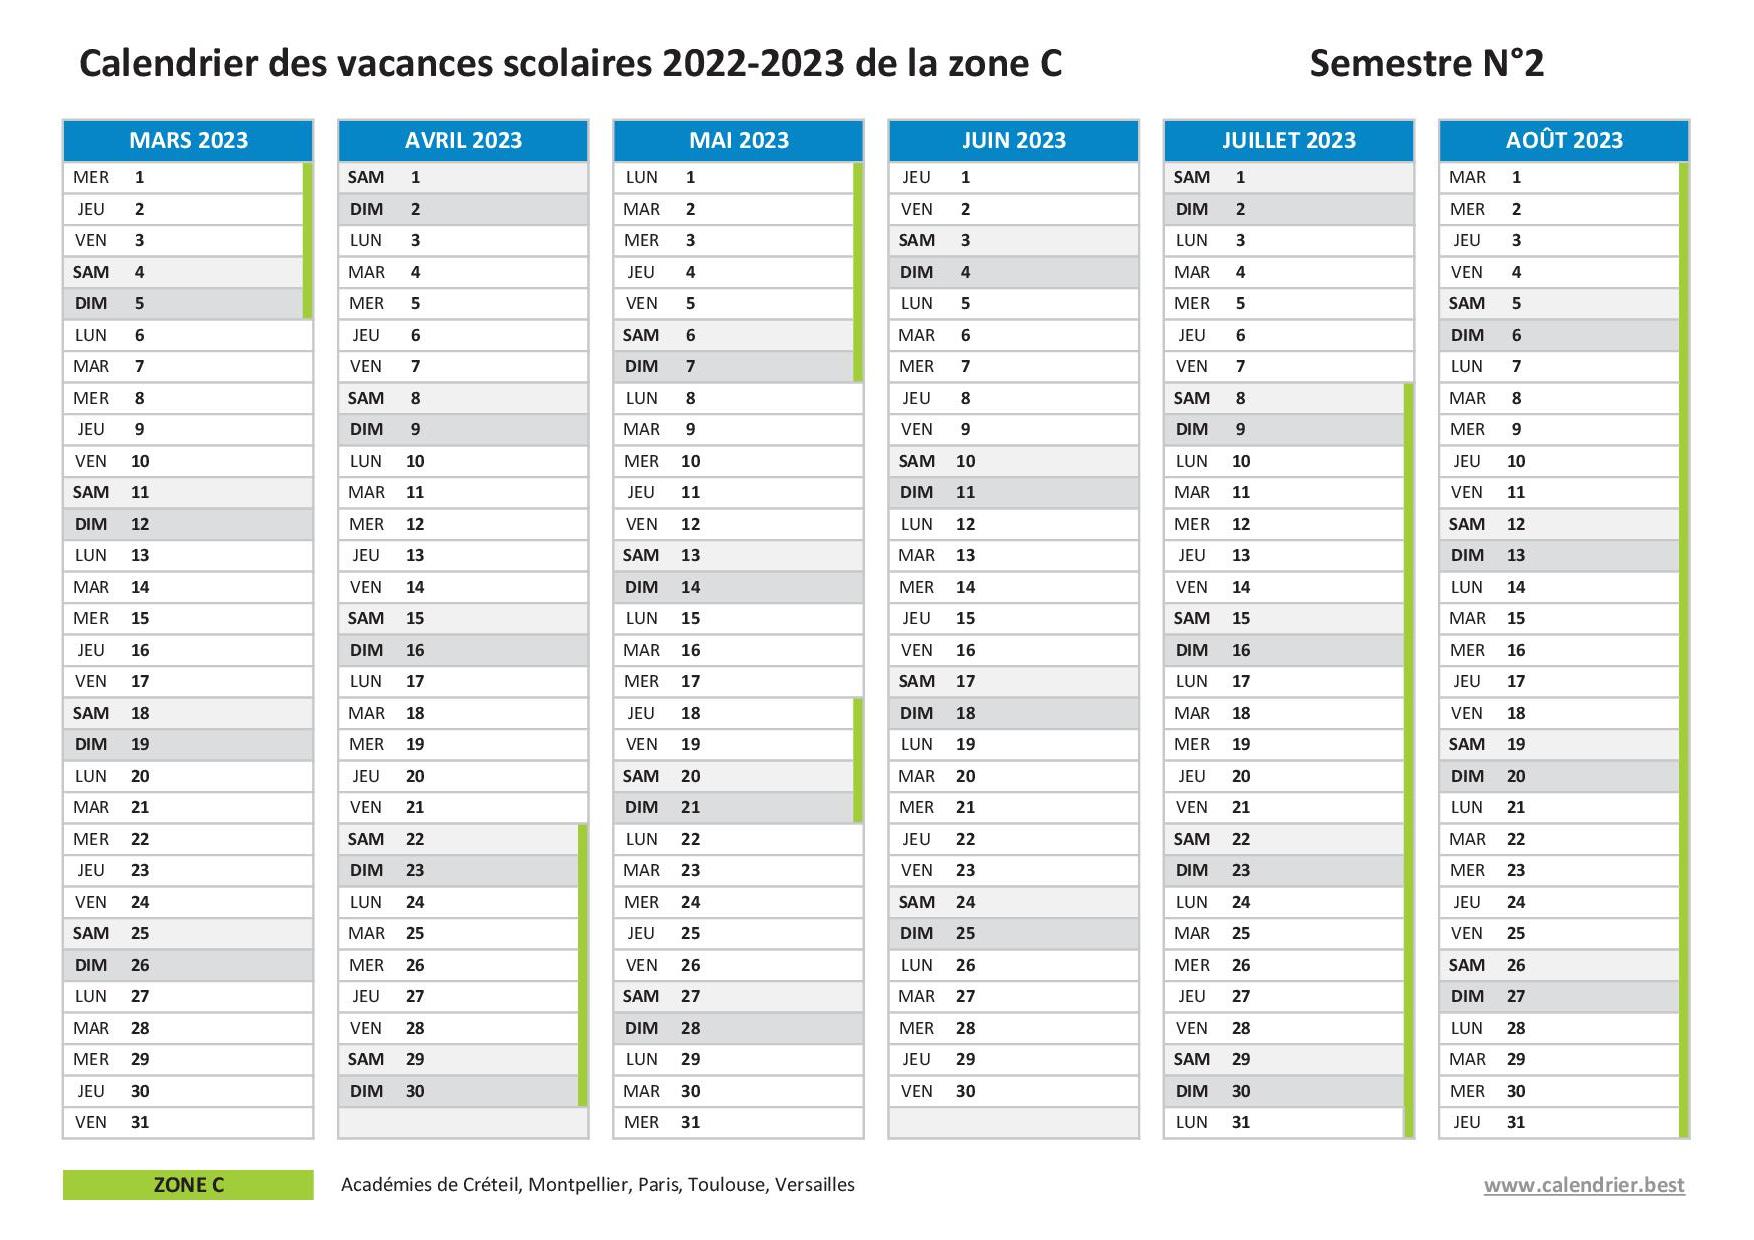 Calendrier scolaire 2022-2023 de la zone C - Semestre 2